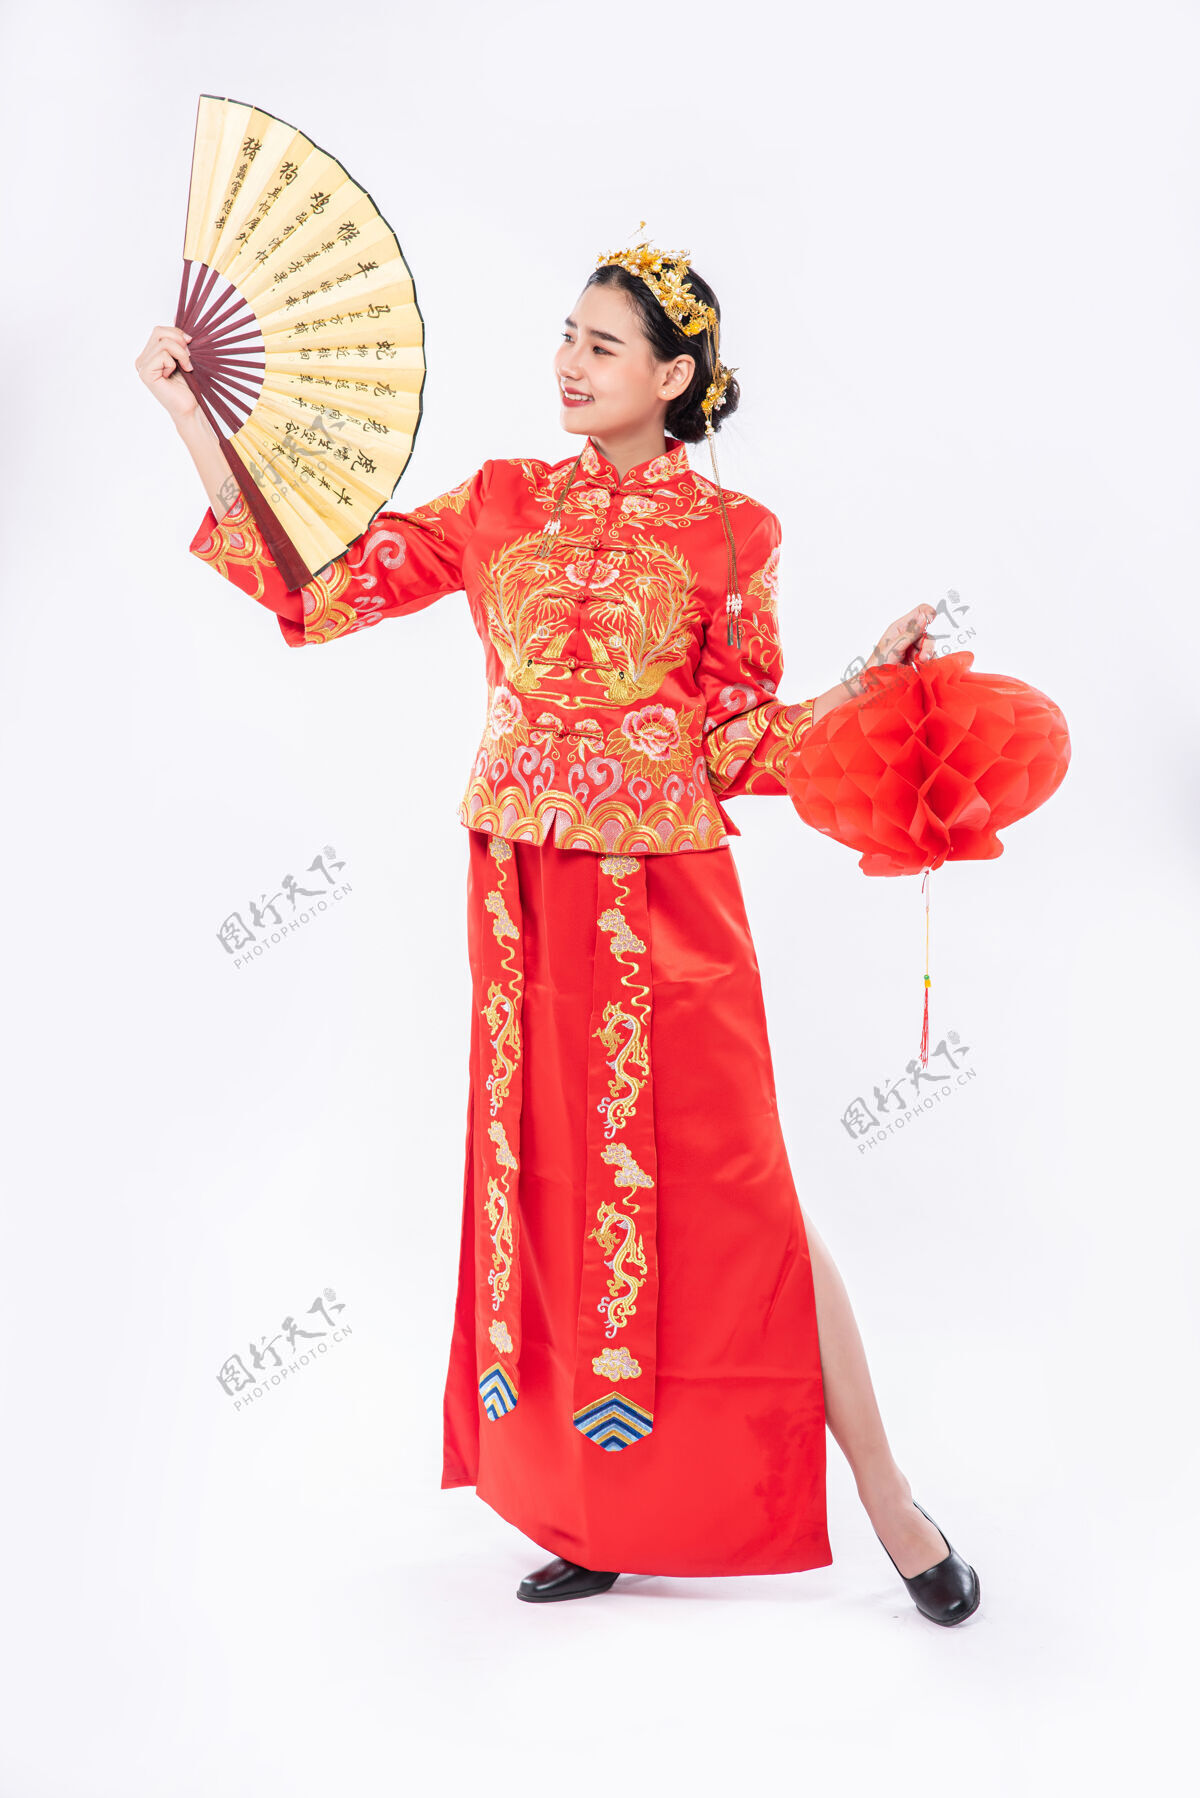 红灯笼穿旗袍套装的女士在中国新年的大型活动上宣传中国手扇和红灯中国新年文化庆祝